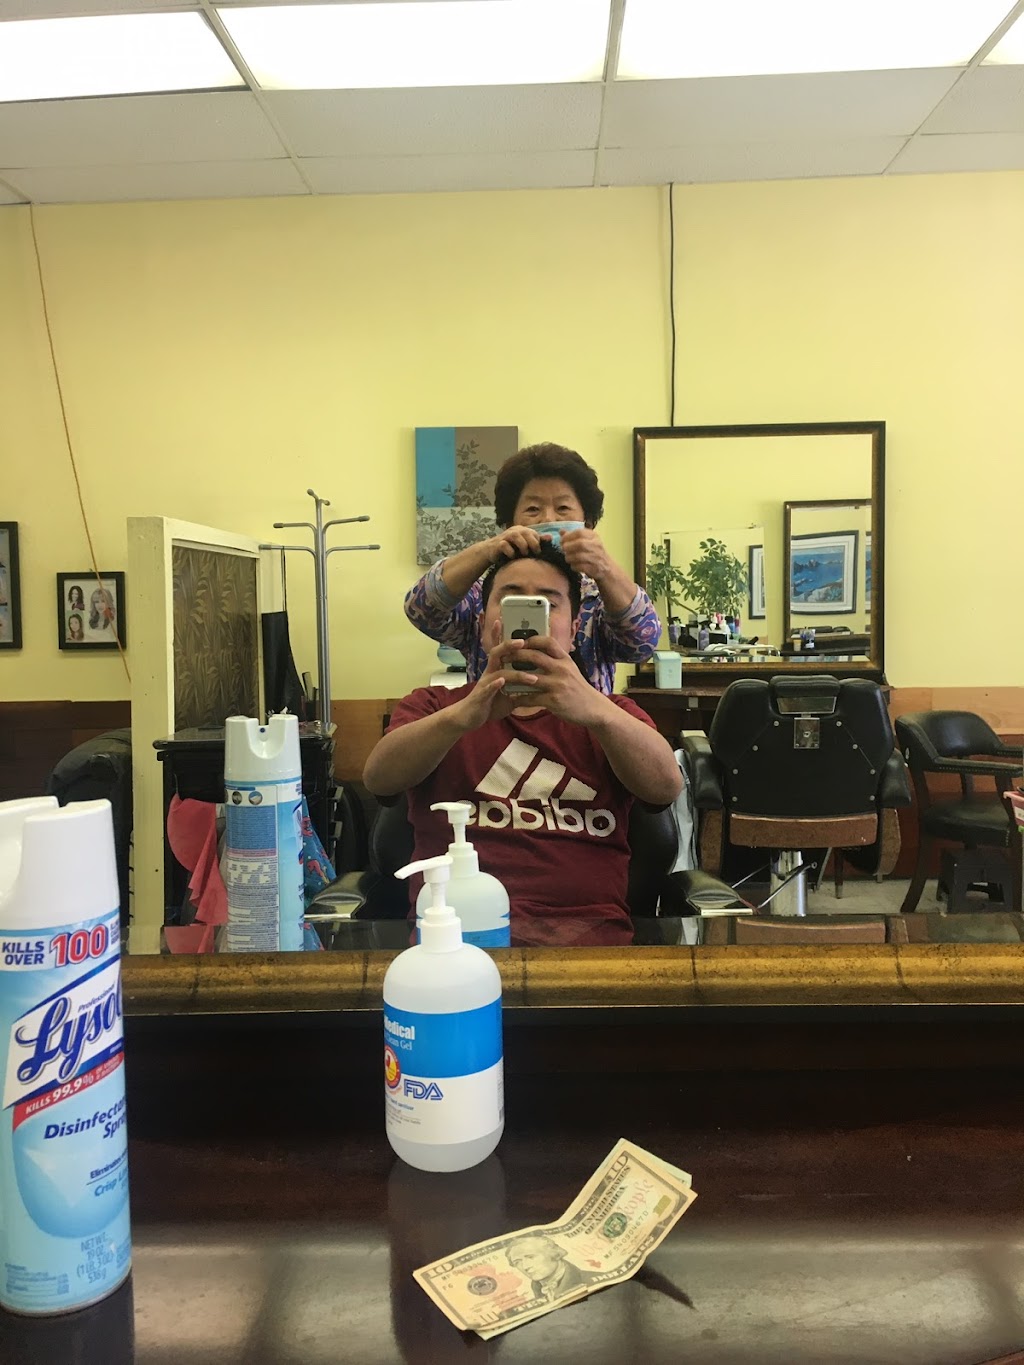 Professional Hair Cut | 3050 W Lincoln Ave, Anaheim, CA 92801, USA | Phone: (714) 226-9331